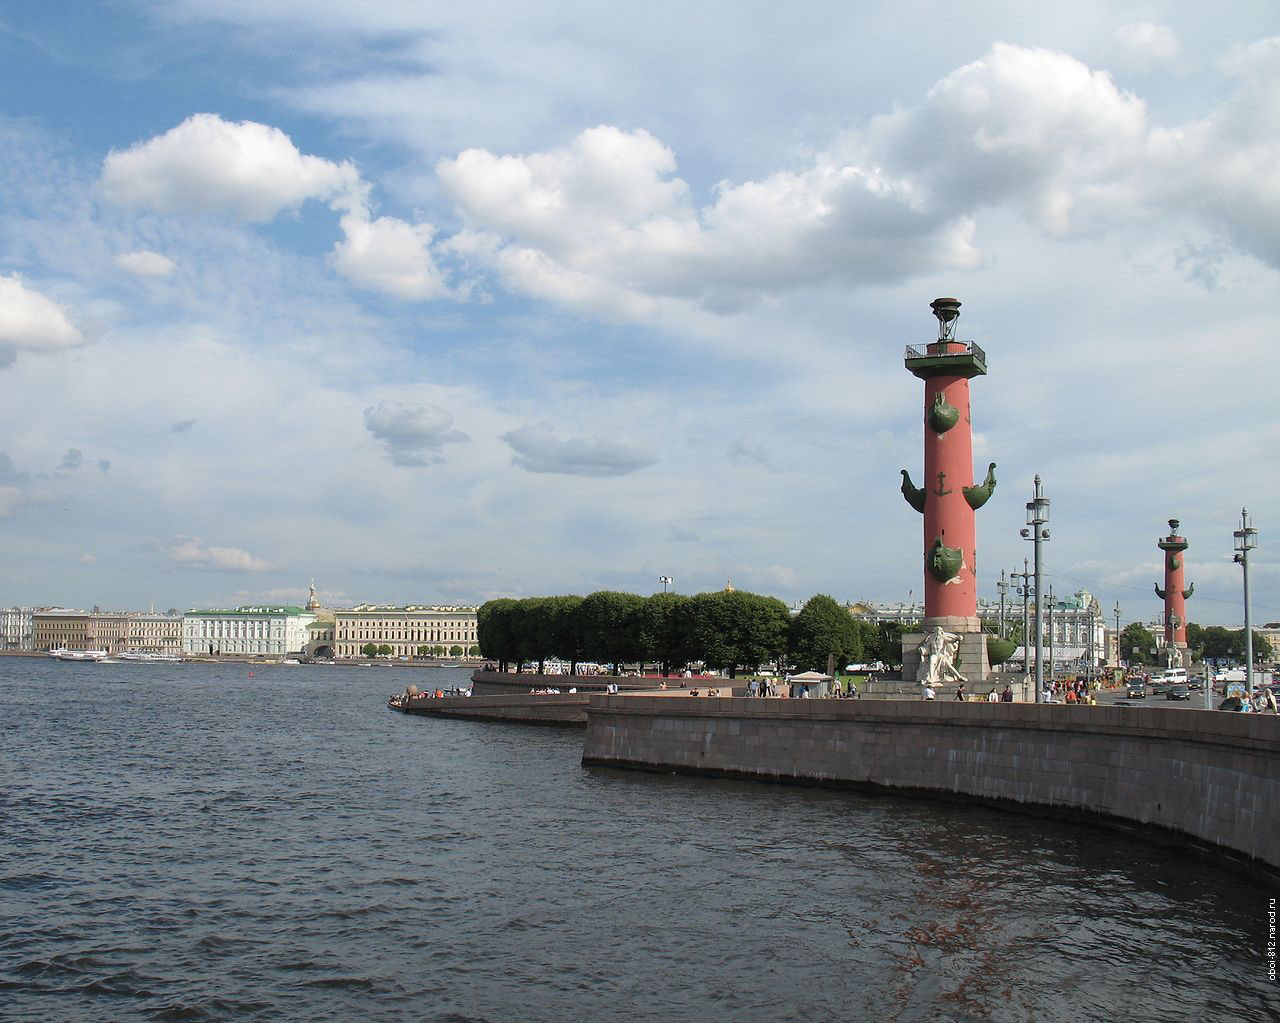 Ростральные колонны на Стрелке Васильевского острова в Санкт-Петербурге, рядом здание Биржи, а так же Дворцовый и Биржевой мосты